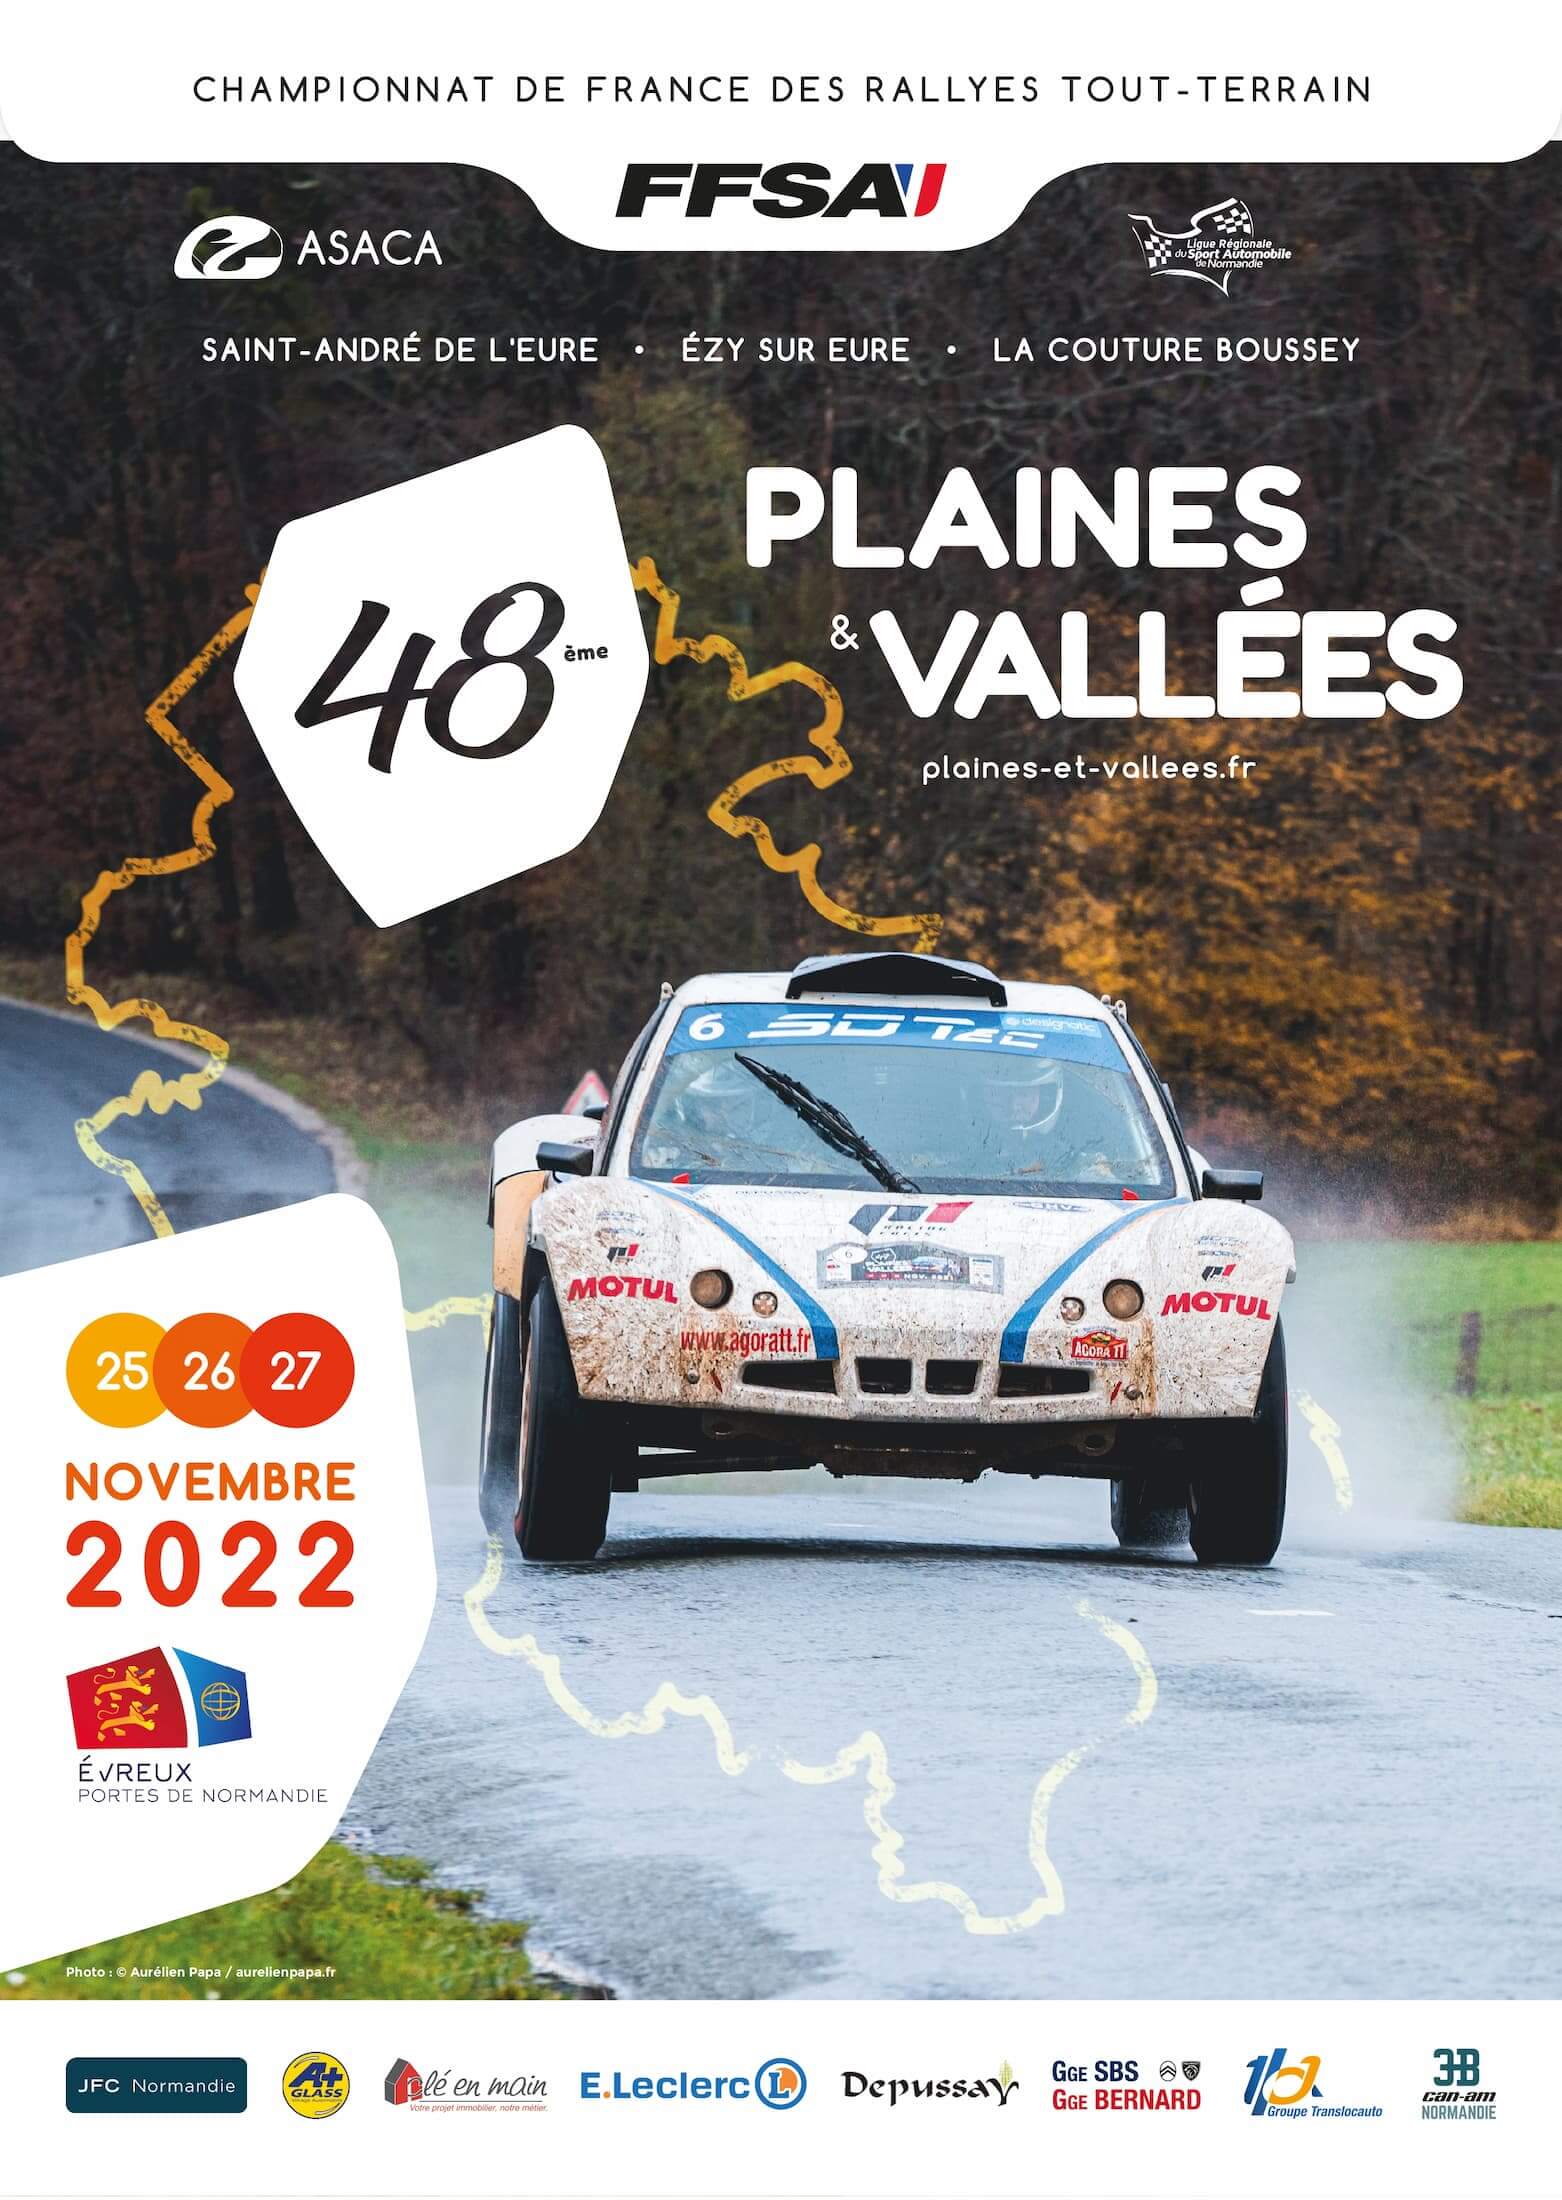 Affiche plaines et vallées 2022 FFSA rallye france